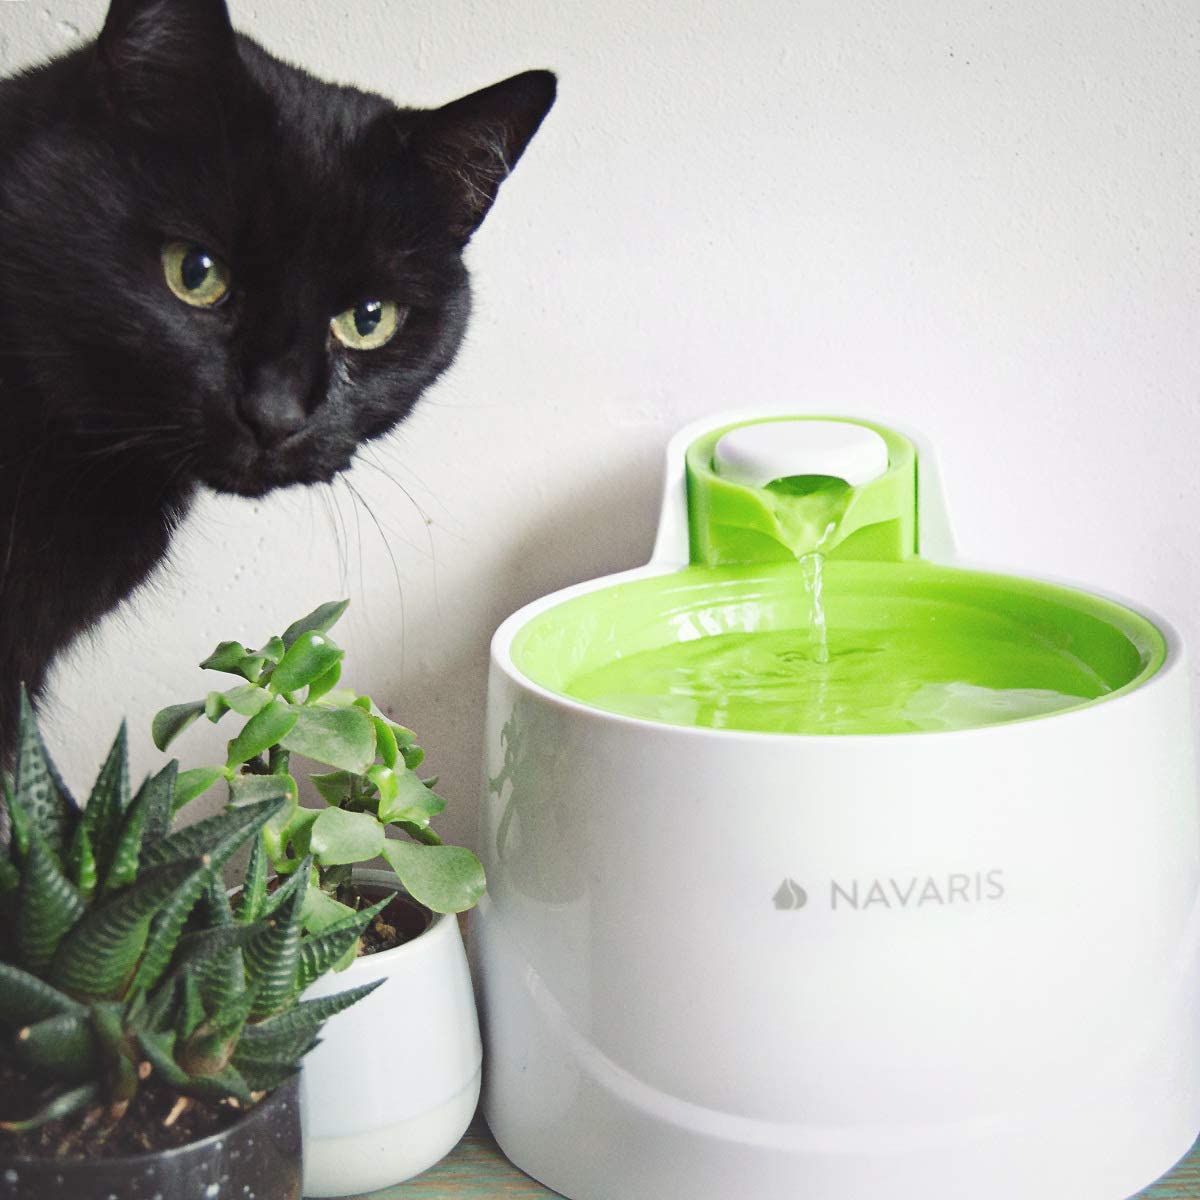  Navaris Fuente de Agua para Gatos y Perros - Bebedero de 2 litros con Filtro y Bomba Sumergible - Dispensador de Agua con Flujo Ajustable Color Verde 